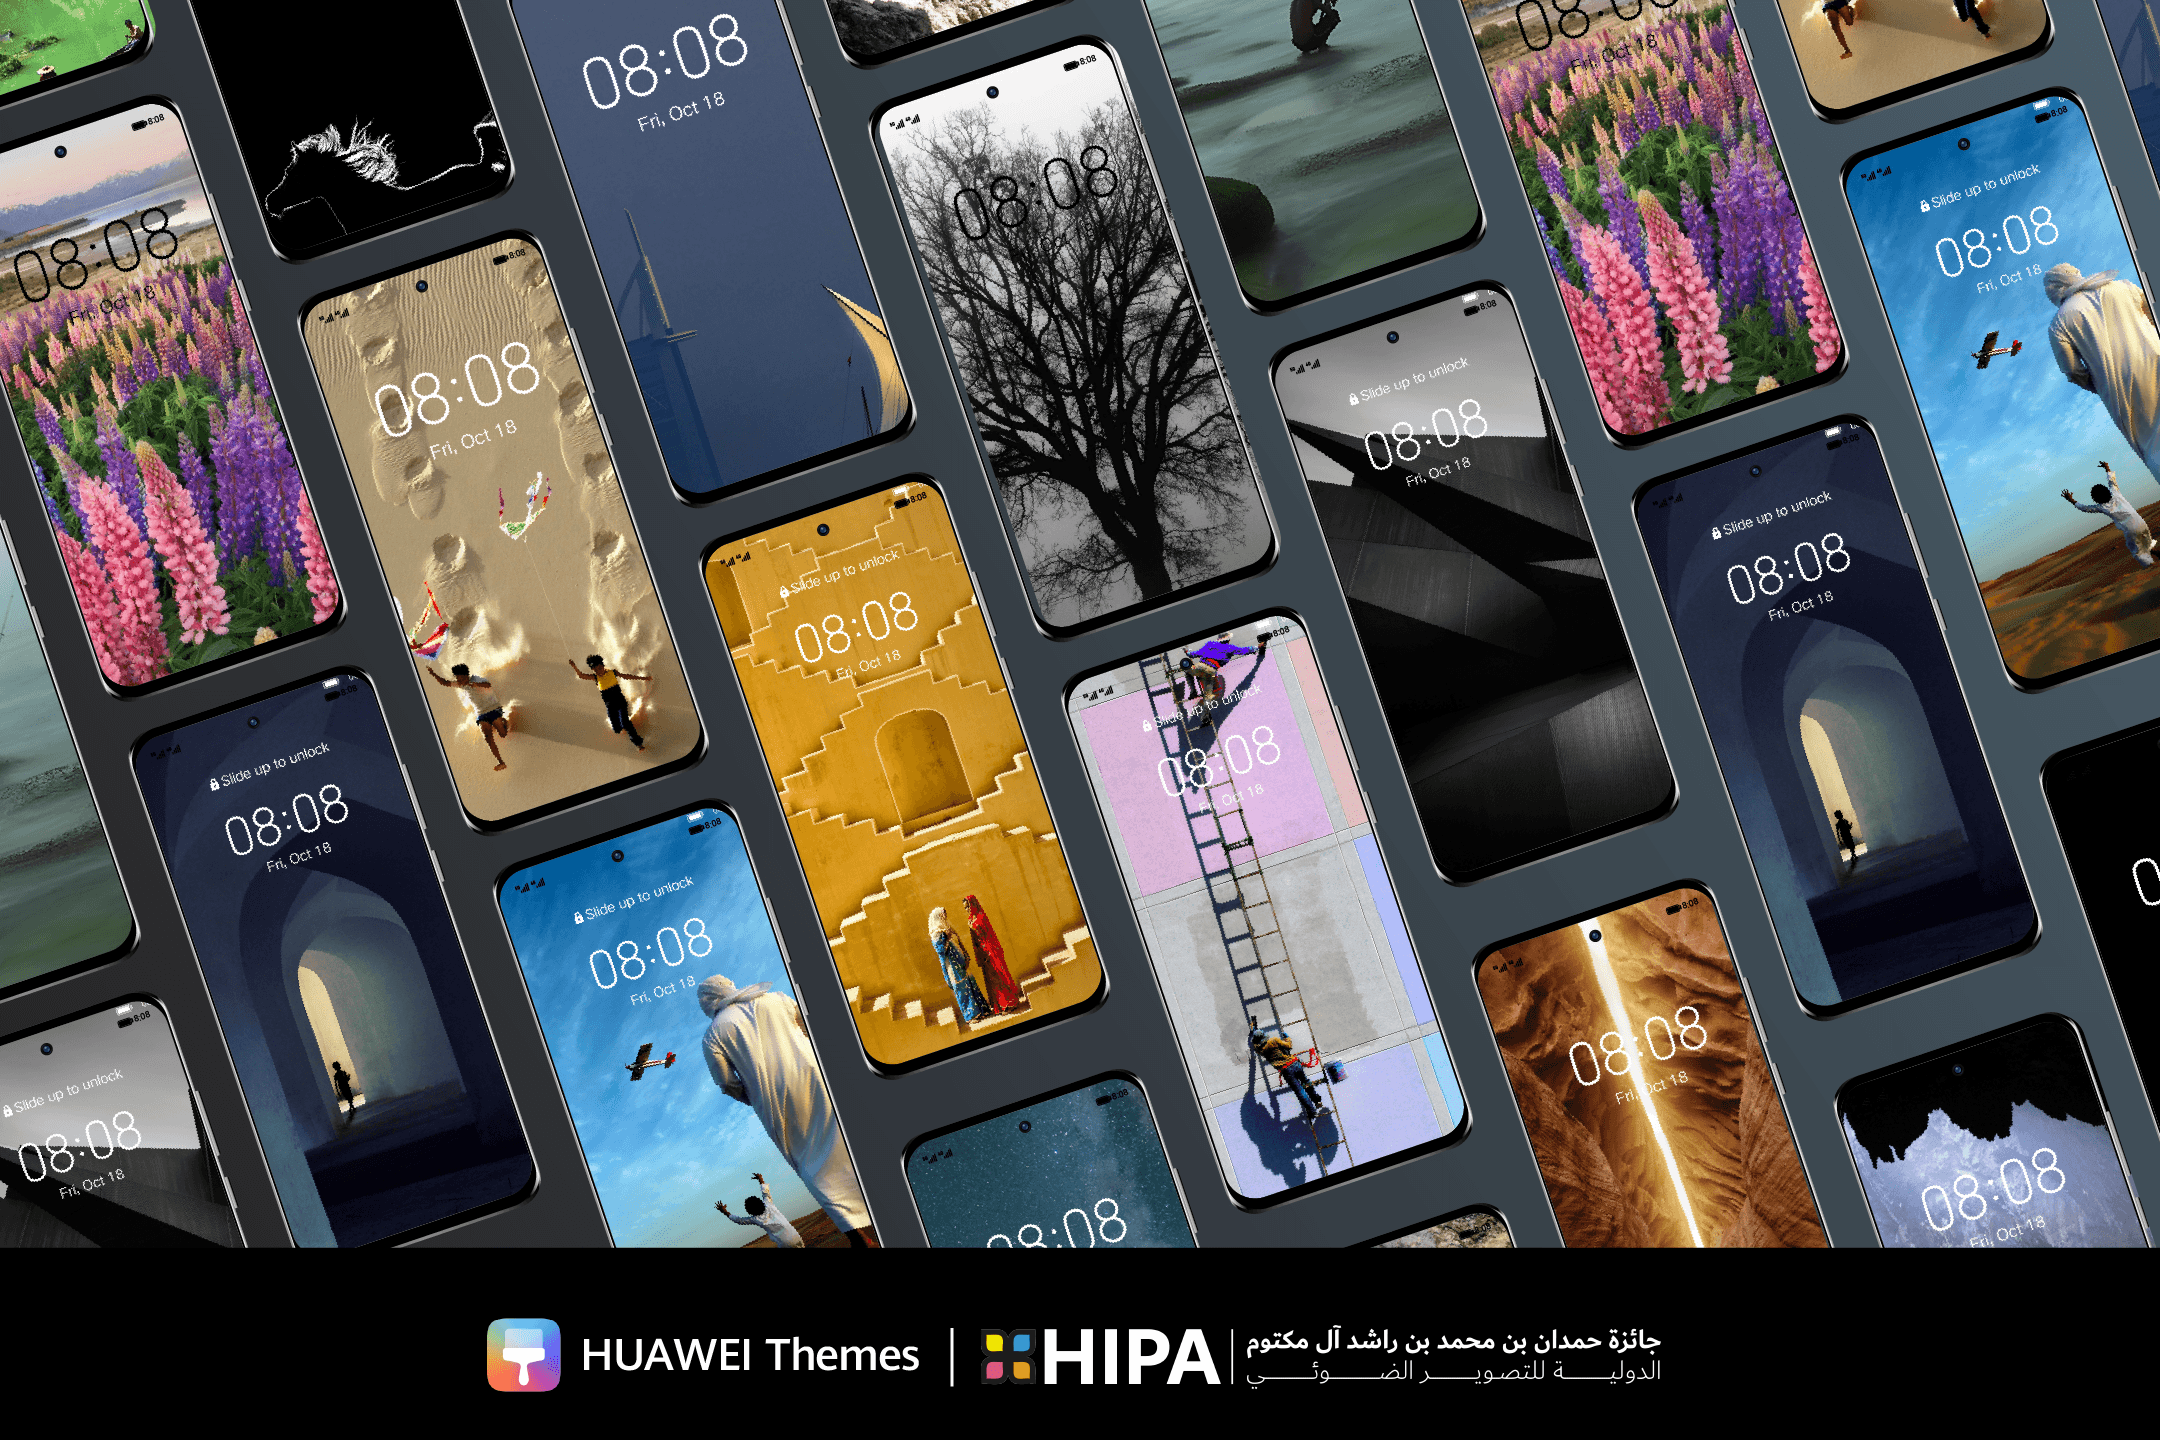 شركة HONOR تُعلن عن الإتاحة الرسمية لهاتفيّ HONOR Magic5 Pro وHONOR Magic Vs في الأسواق السعودية